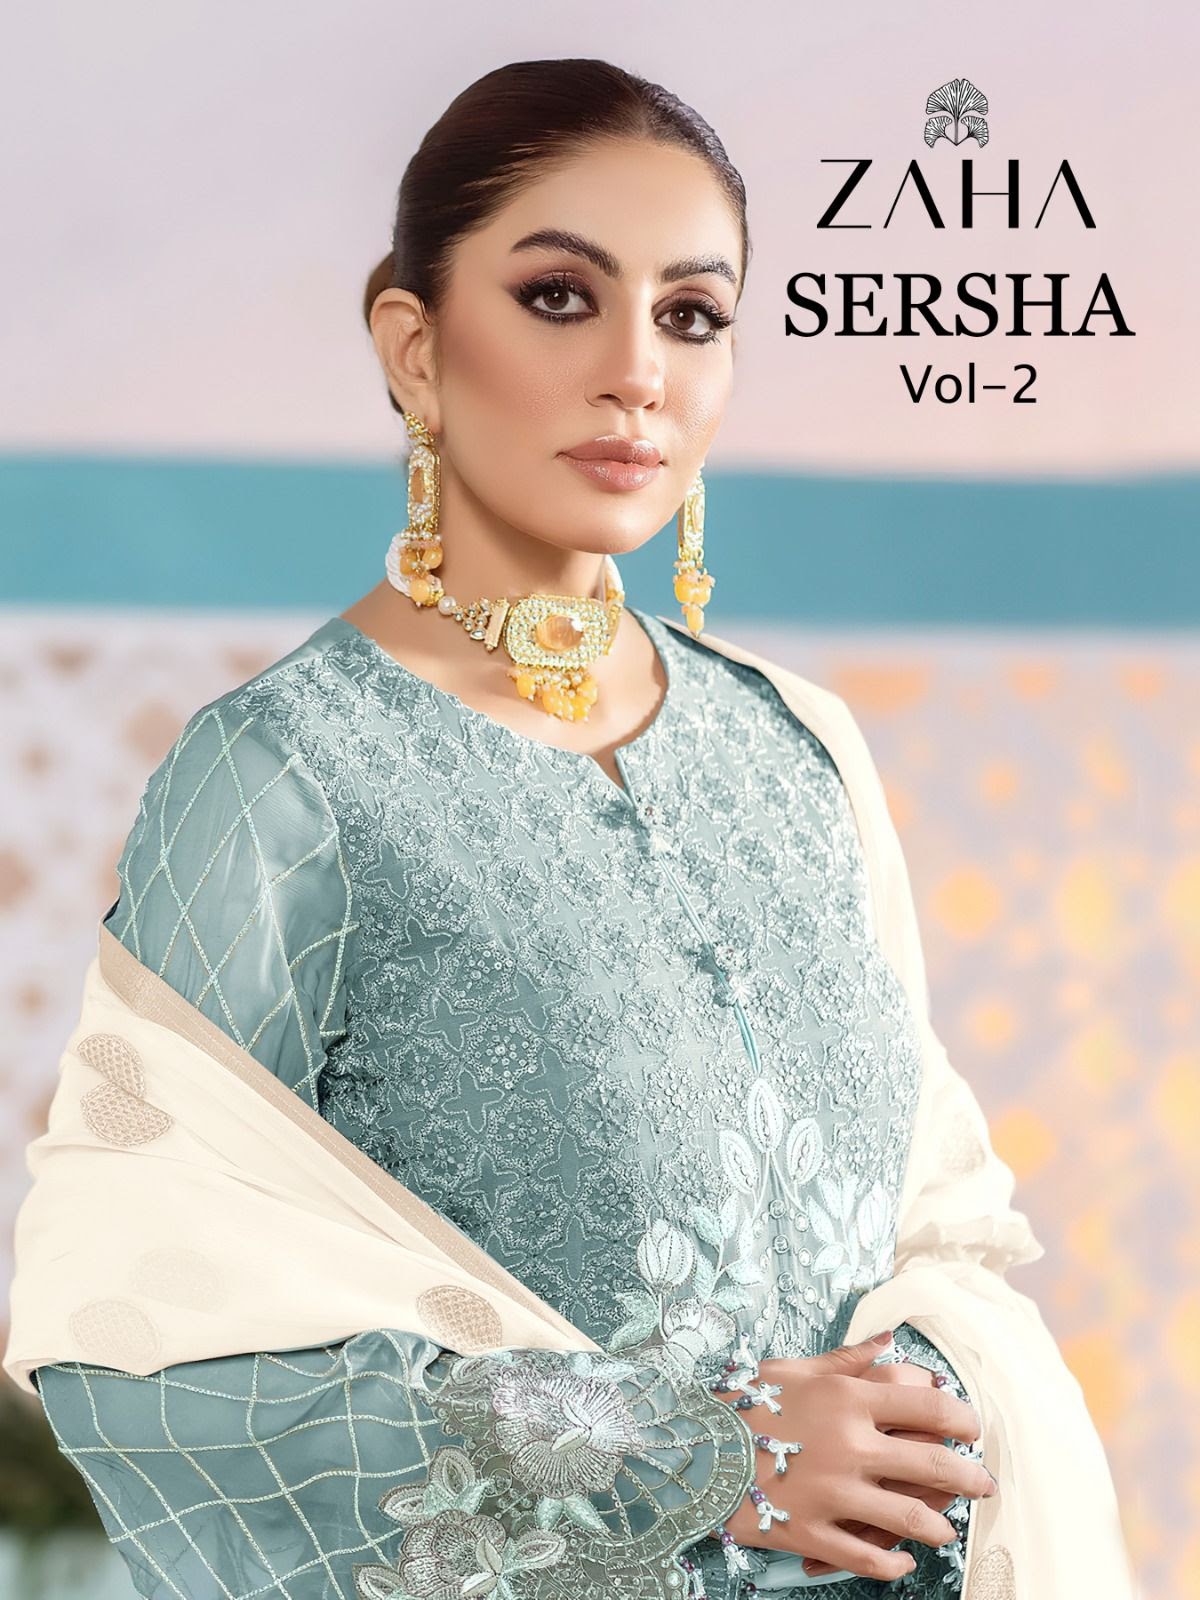 Sersha Vol 2 Dn 10217 Zaha Georgette Pakistani Salwar Suits